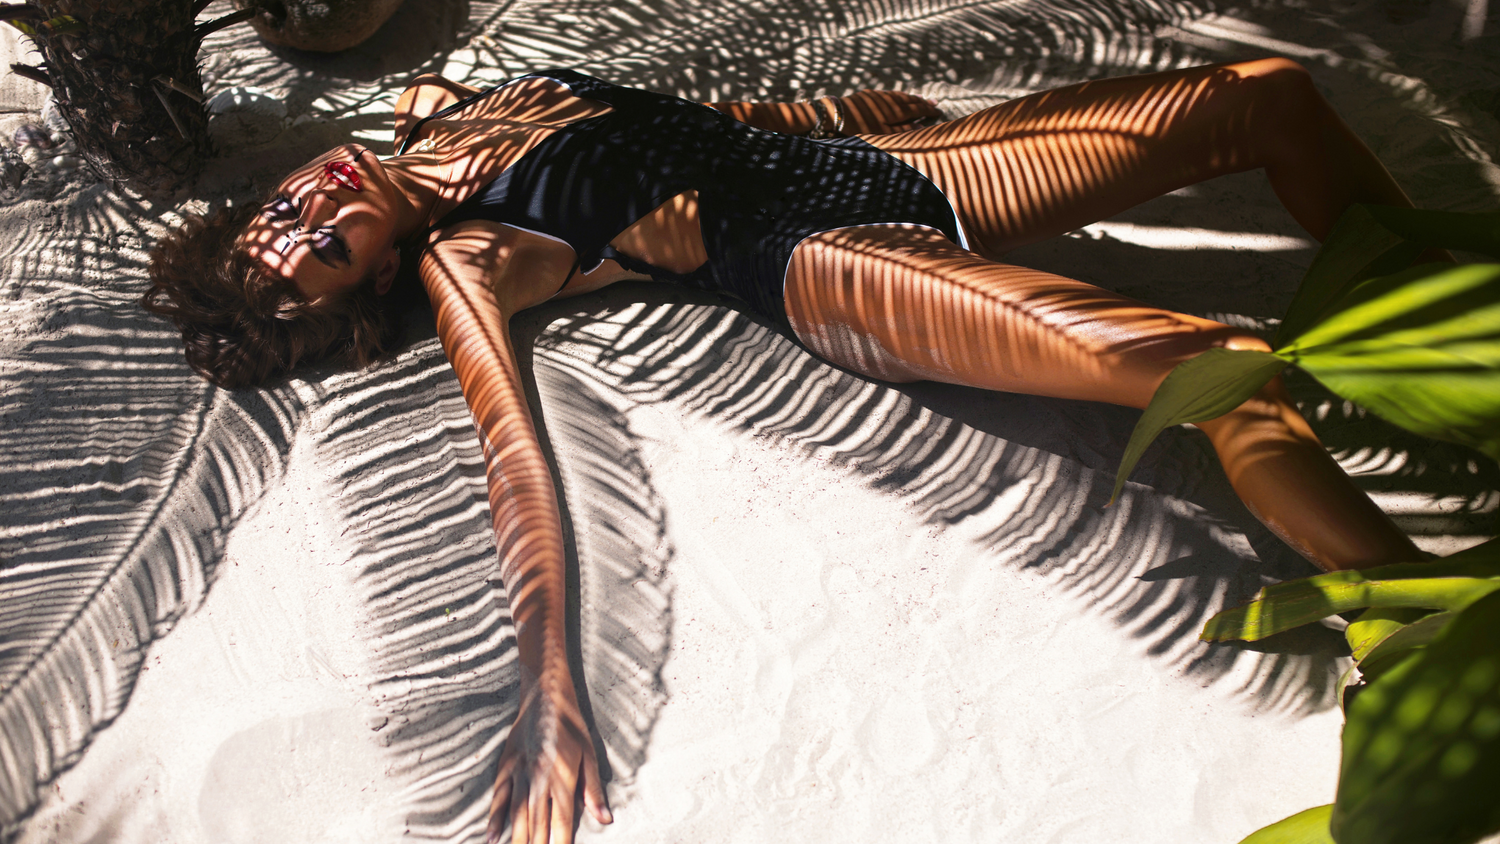 femme brune mince en maillot de bain une pièce noir allongée dans le sable bras écartée avec l'ombre des feuilles de palmier artistiquement dessinées sur son corps